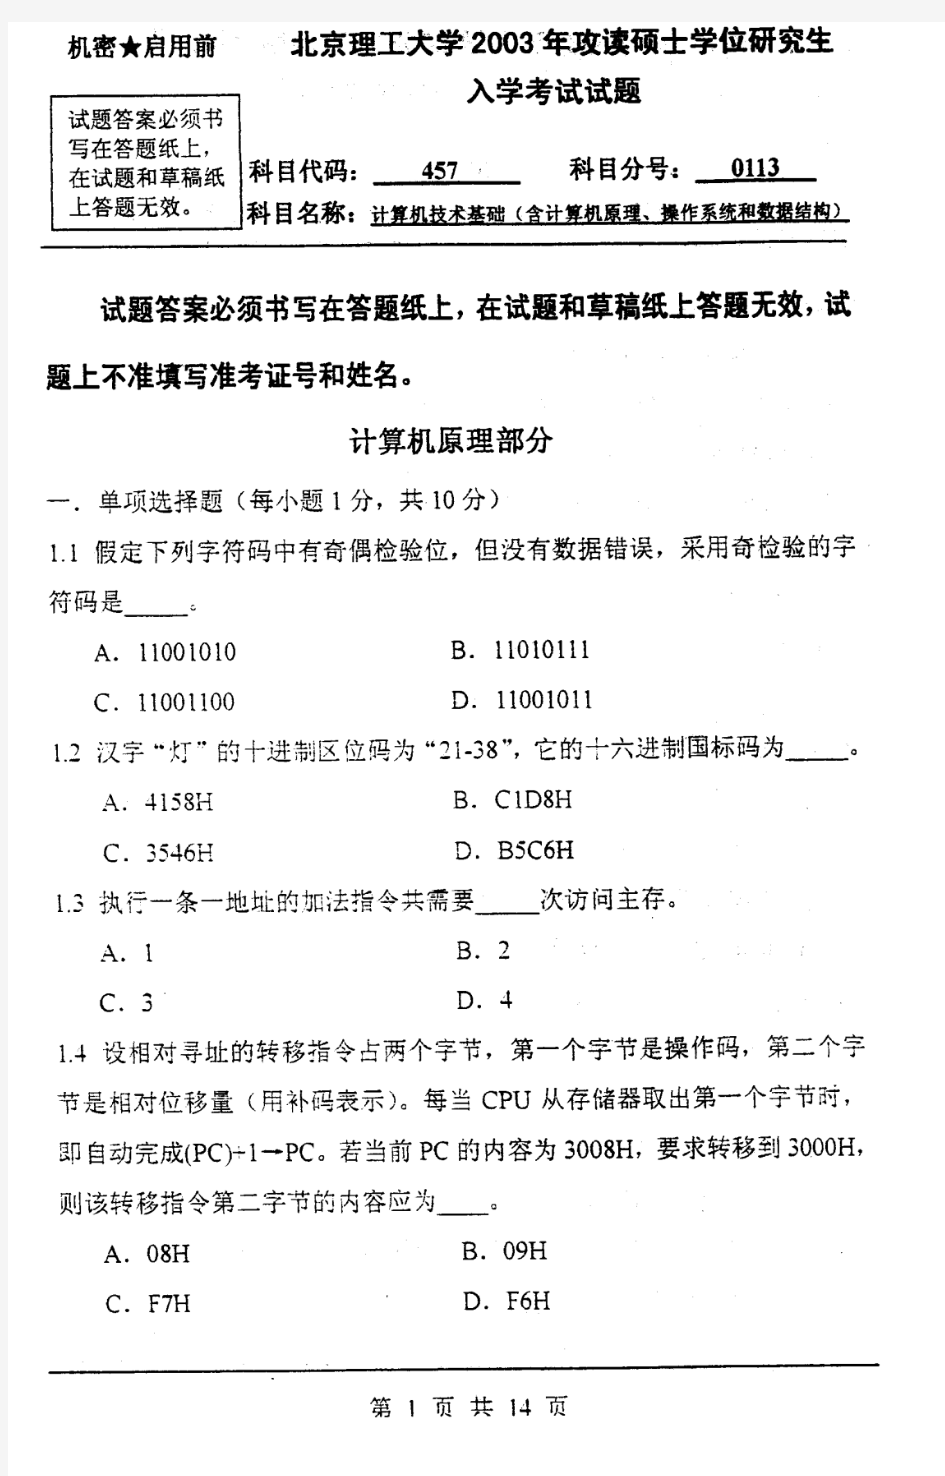 北京理工大学 计算机技术基础(含计算机原理、操作系统和数据结构)-2003